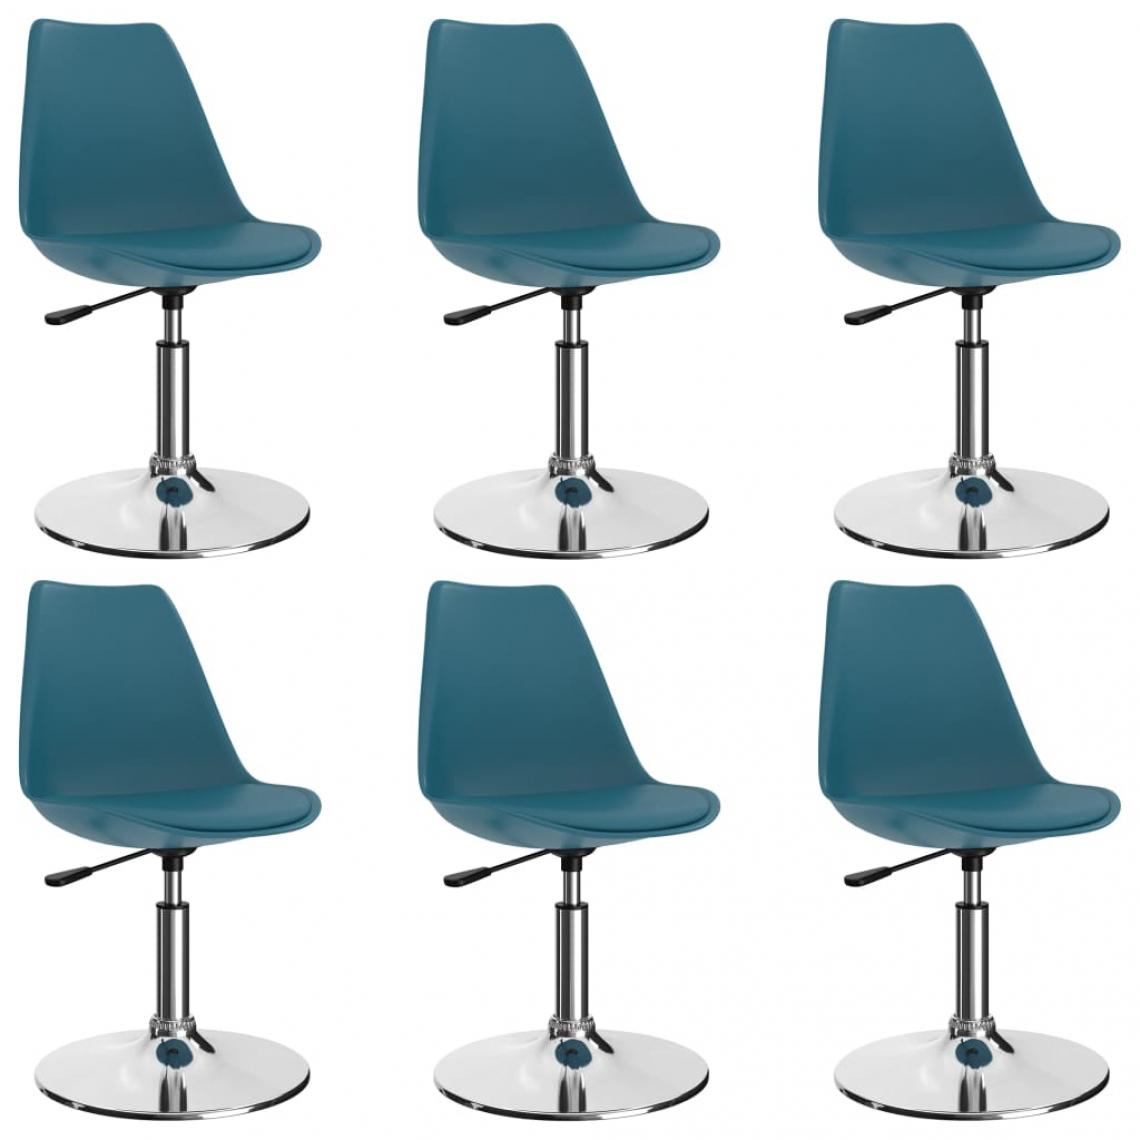 Decoshop26 - Lot de 6 chaises de salle à manger cuisine pivotantes design moderne similicuir turquoise CDS022772 - Chaises